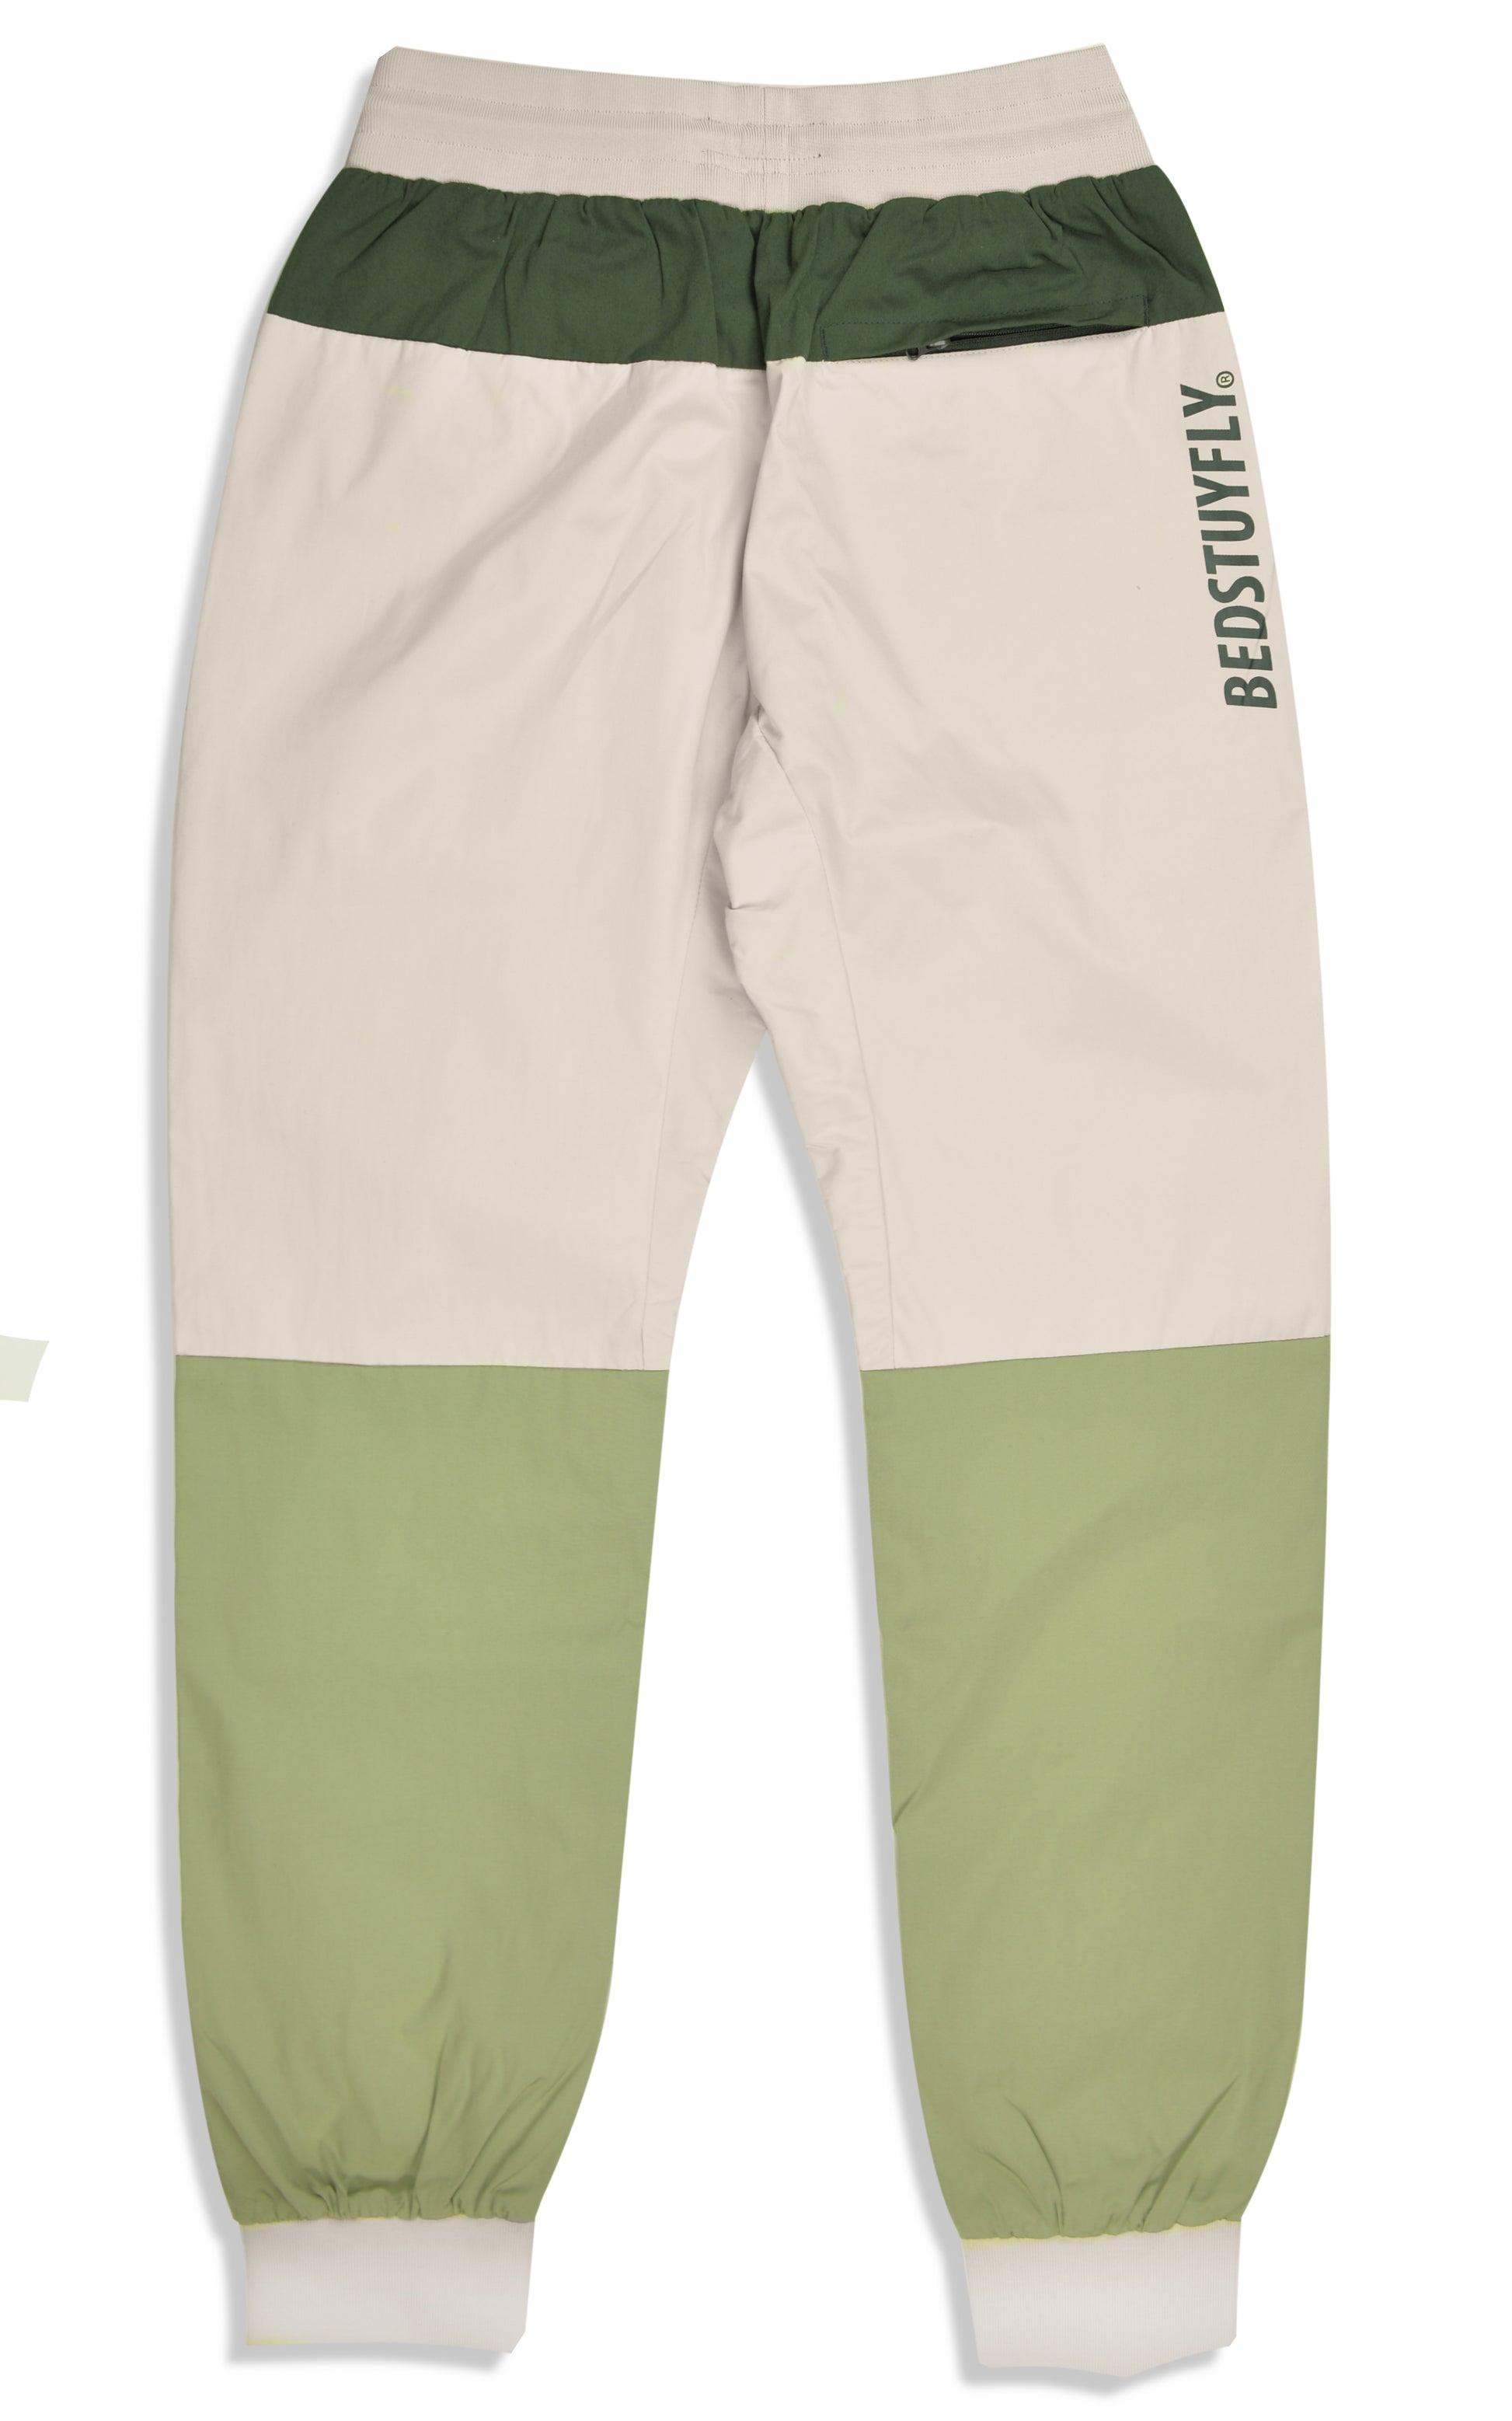 2.0 Tech Pants (Cream/Green) - Bedstuyfly